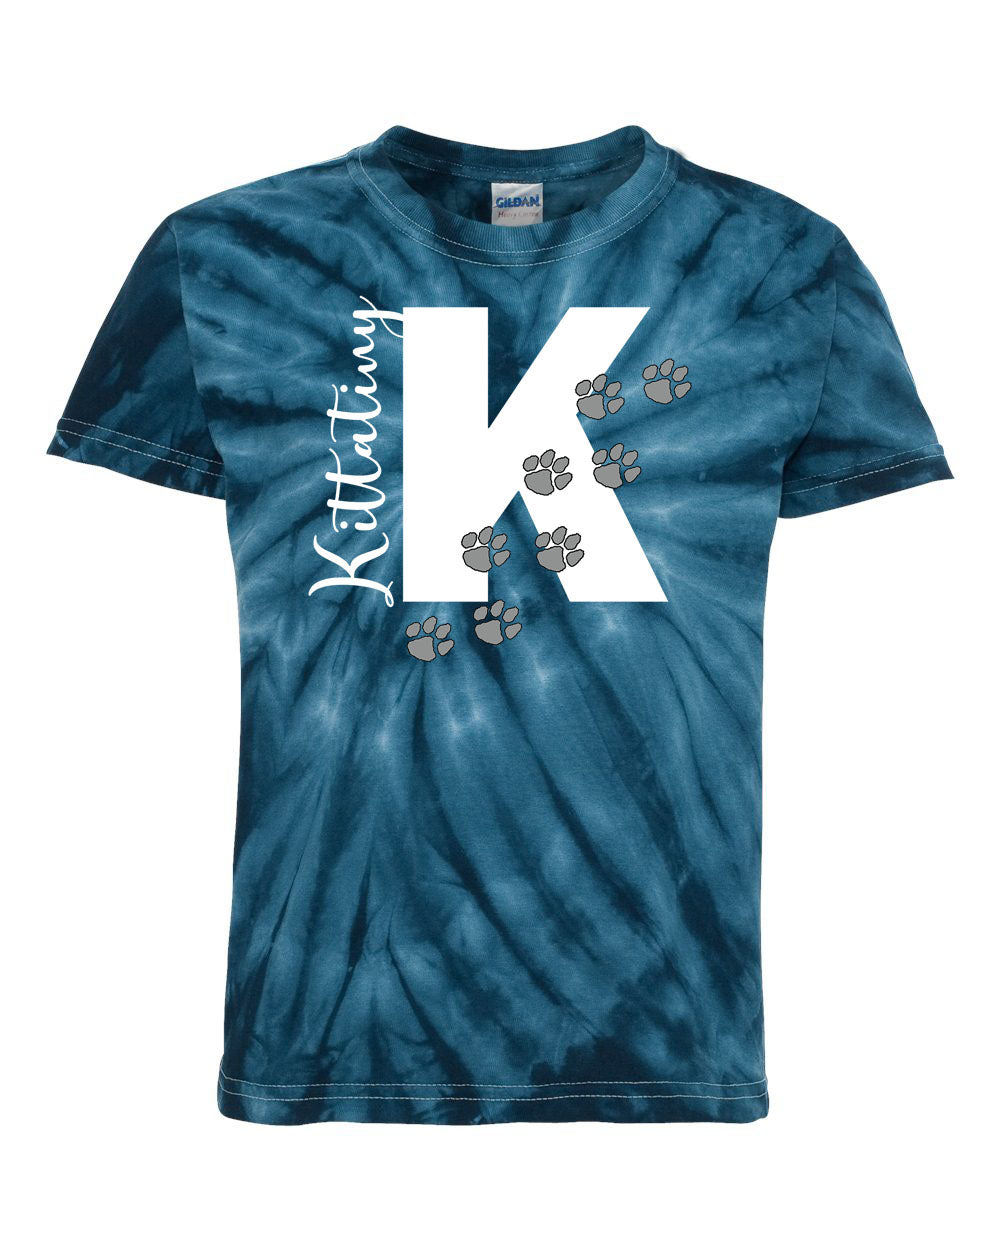 Stillwater Design 6 Tie Dye t-shirt